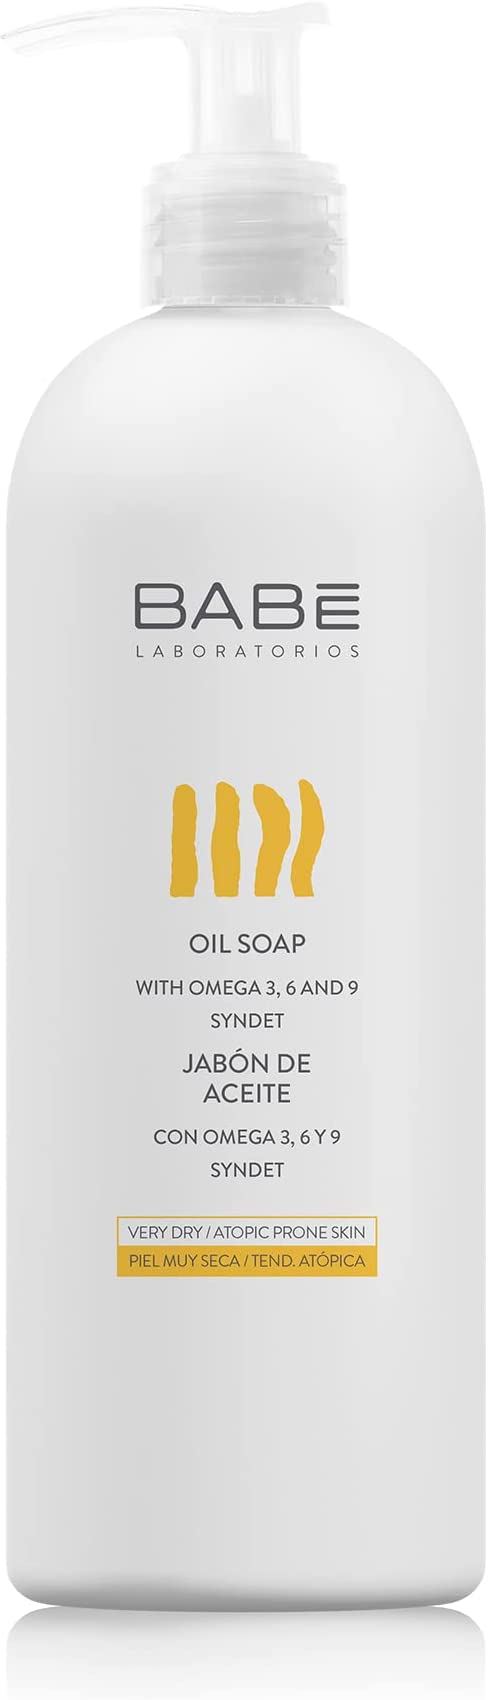 Babe Laboratorios Oil Soap 500ml